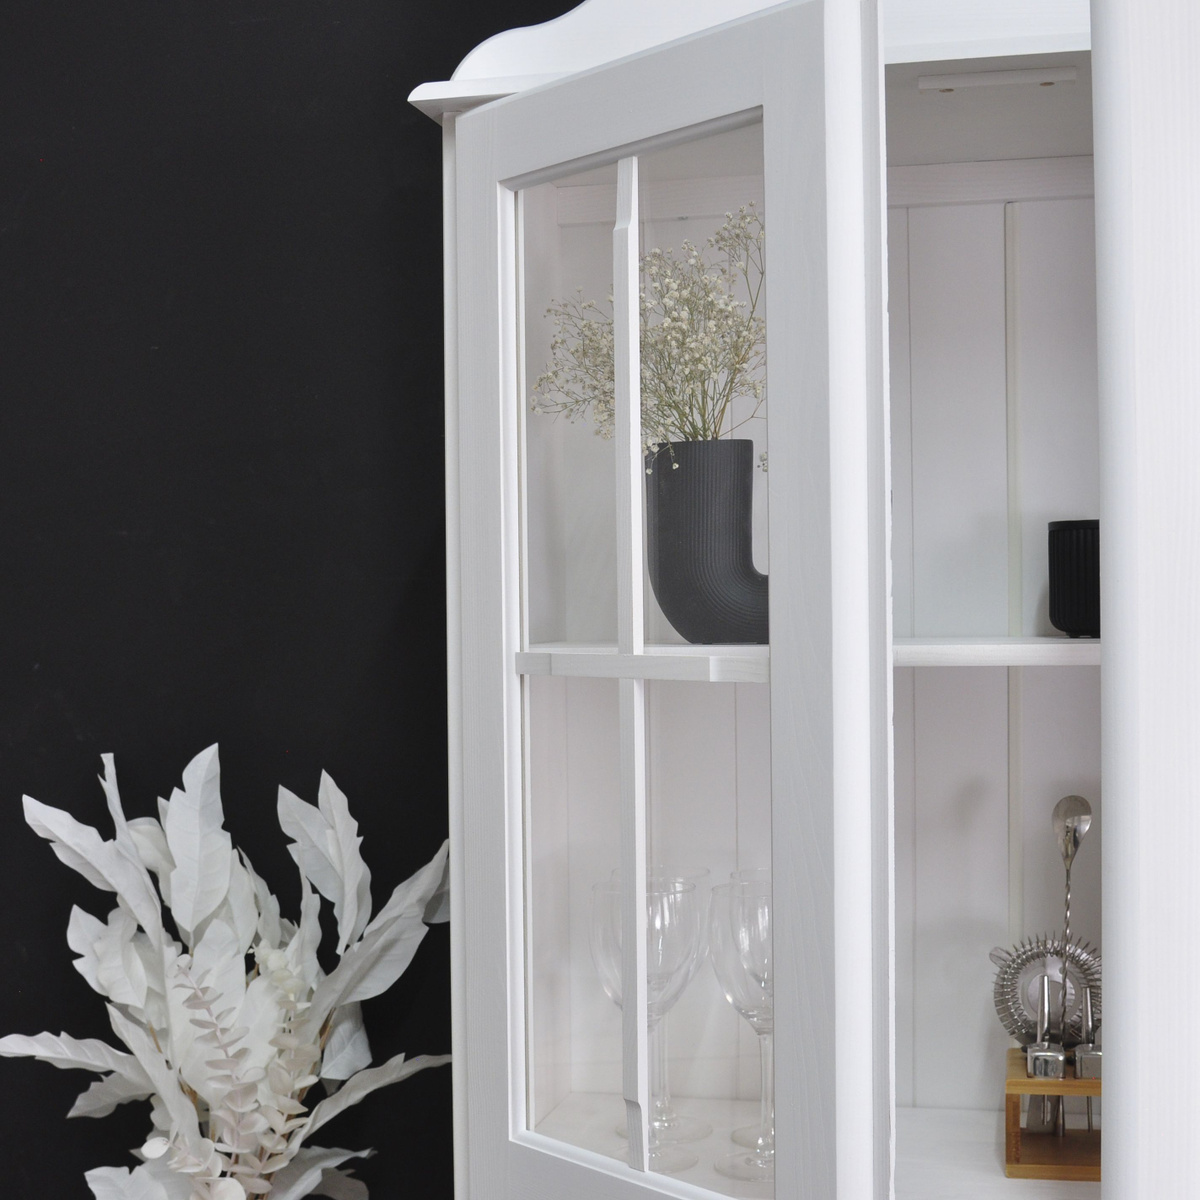 Шкаф в классическом стиле - это не только практическое решение, но и эстетическое. Белый цвет шкафа будет хорошо смотреться в самых различных интерьерах.